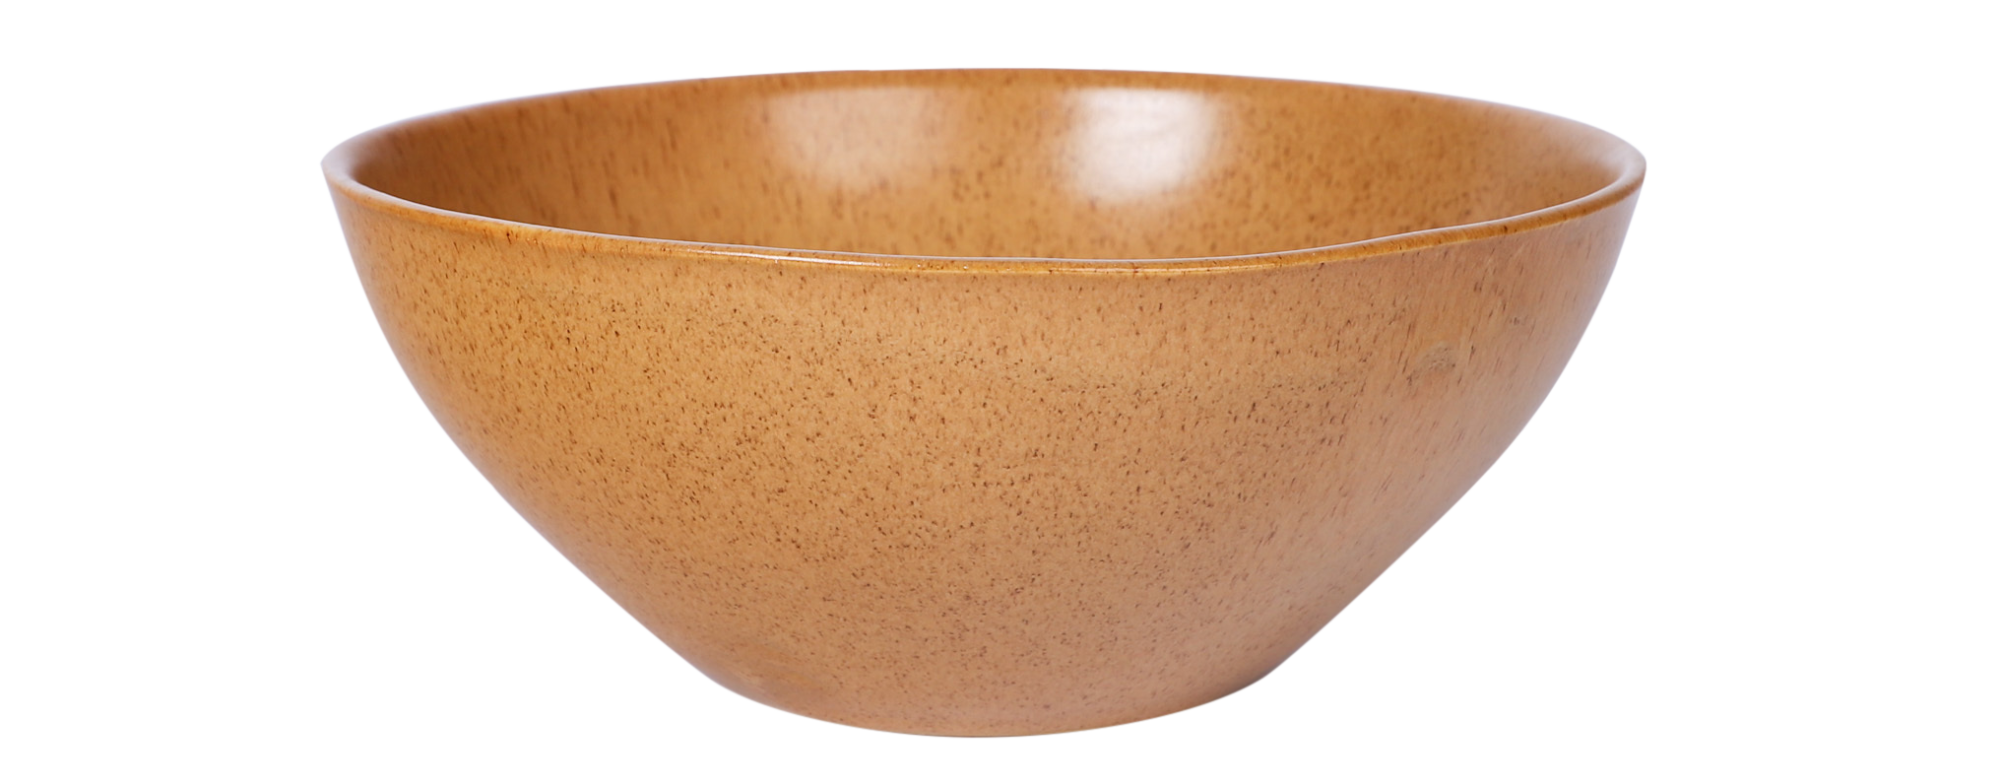 Still Life Ceramics soup bowl